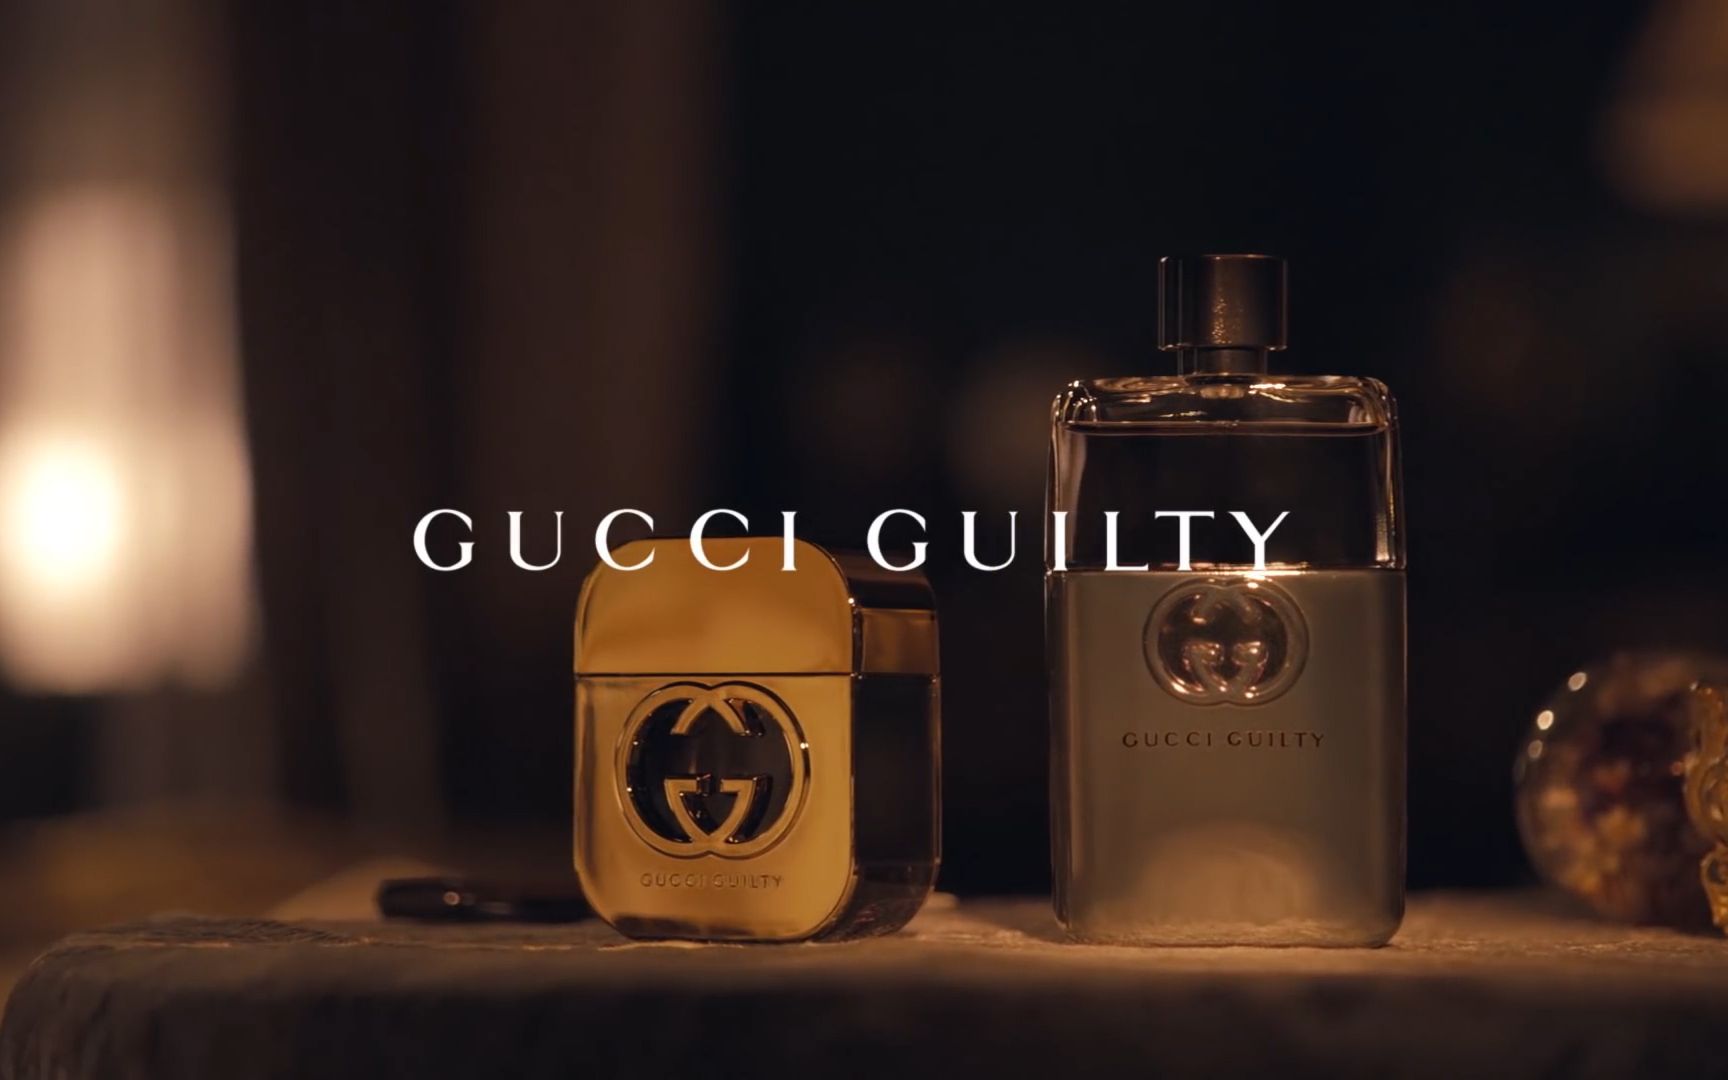 【时尚 | gucci】gucci guilty 罪爱香水广告《teaser